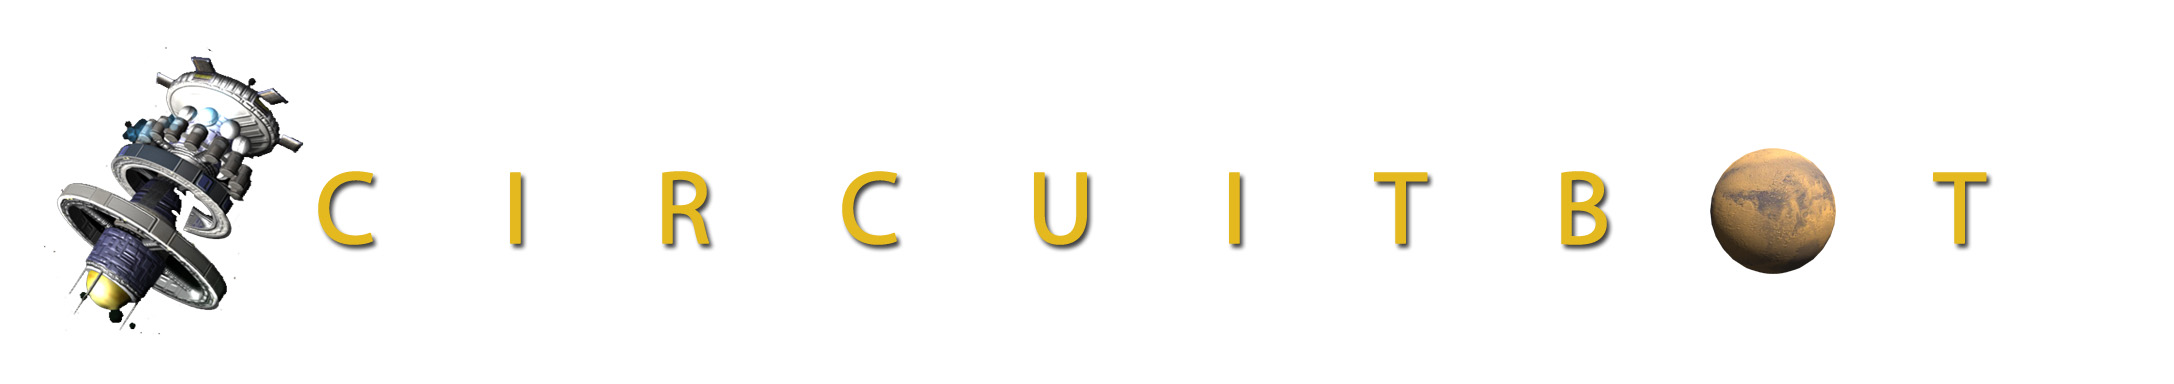 Circuitbot logo darpa game